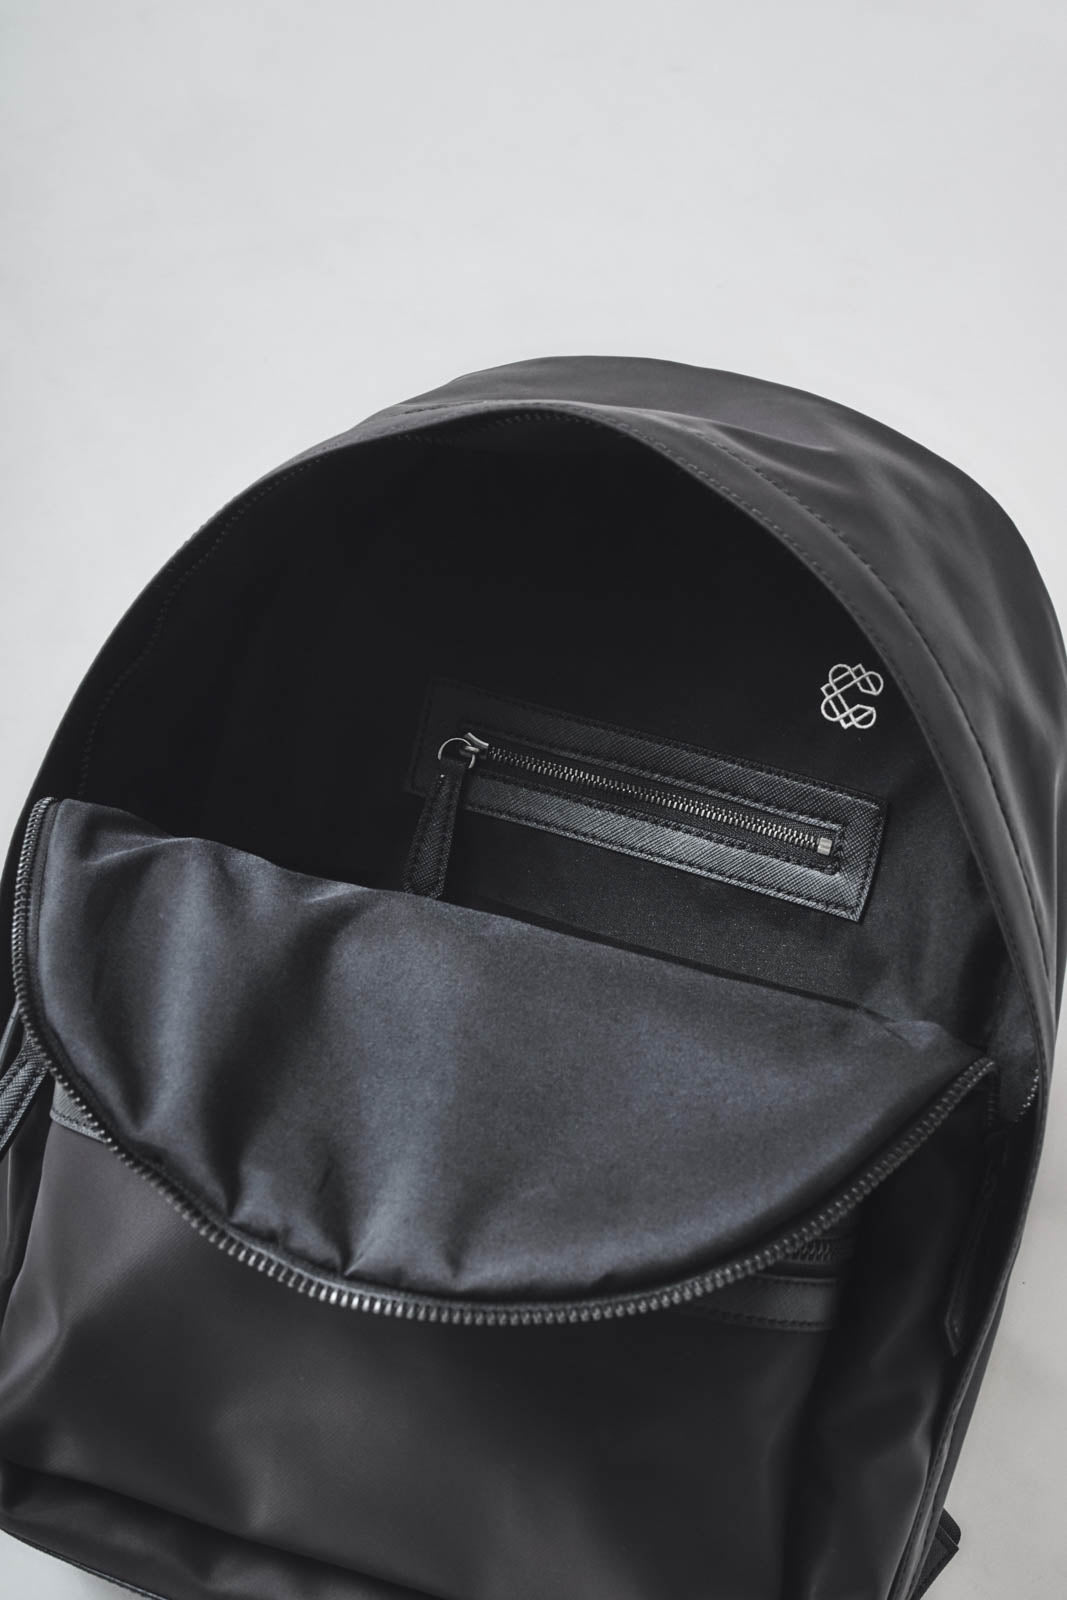 “Onibegie” x Mushroom Leather Backpack